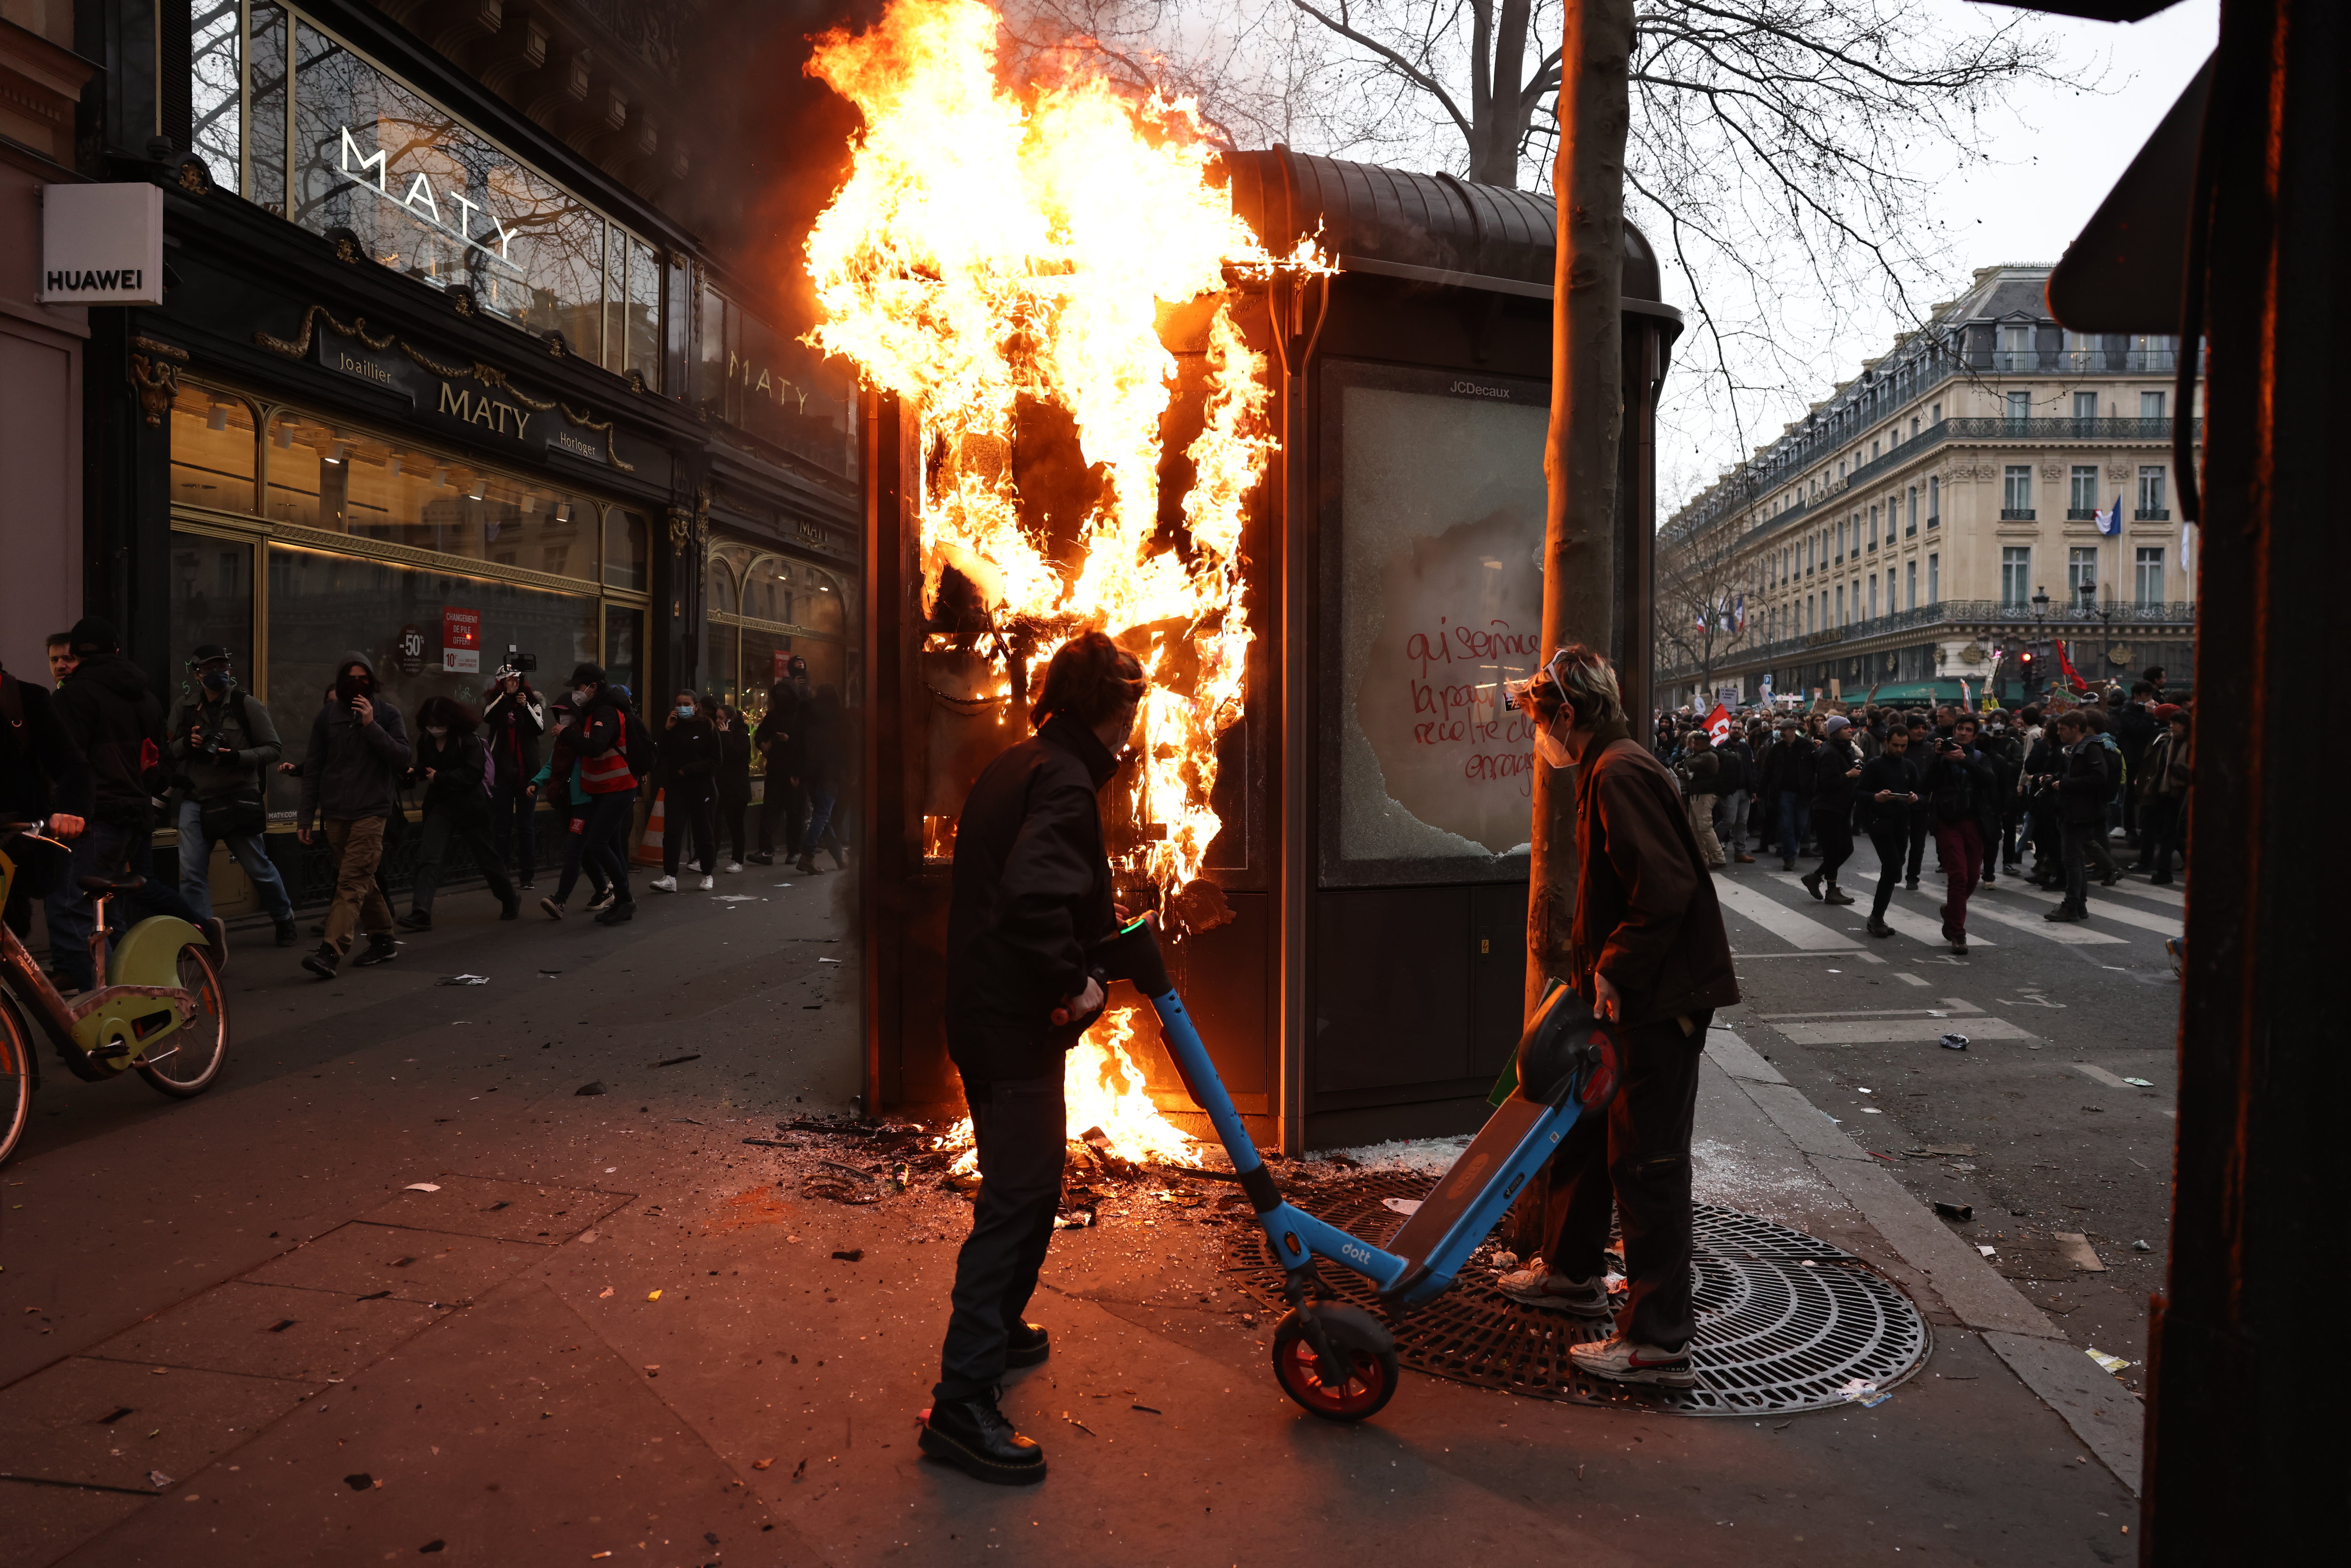 Des heurts ont éclaté au sein du cortège parisien, notamment en raison de la présence de «Black blocs», selon les autorités. LP/Fred Dugit